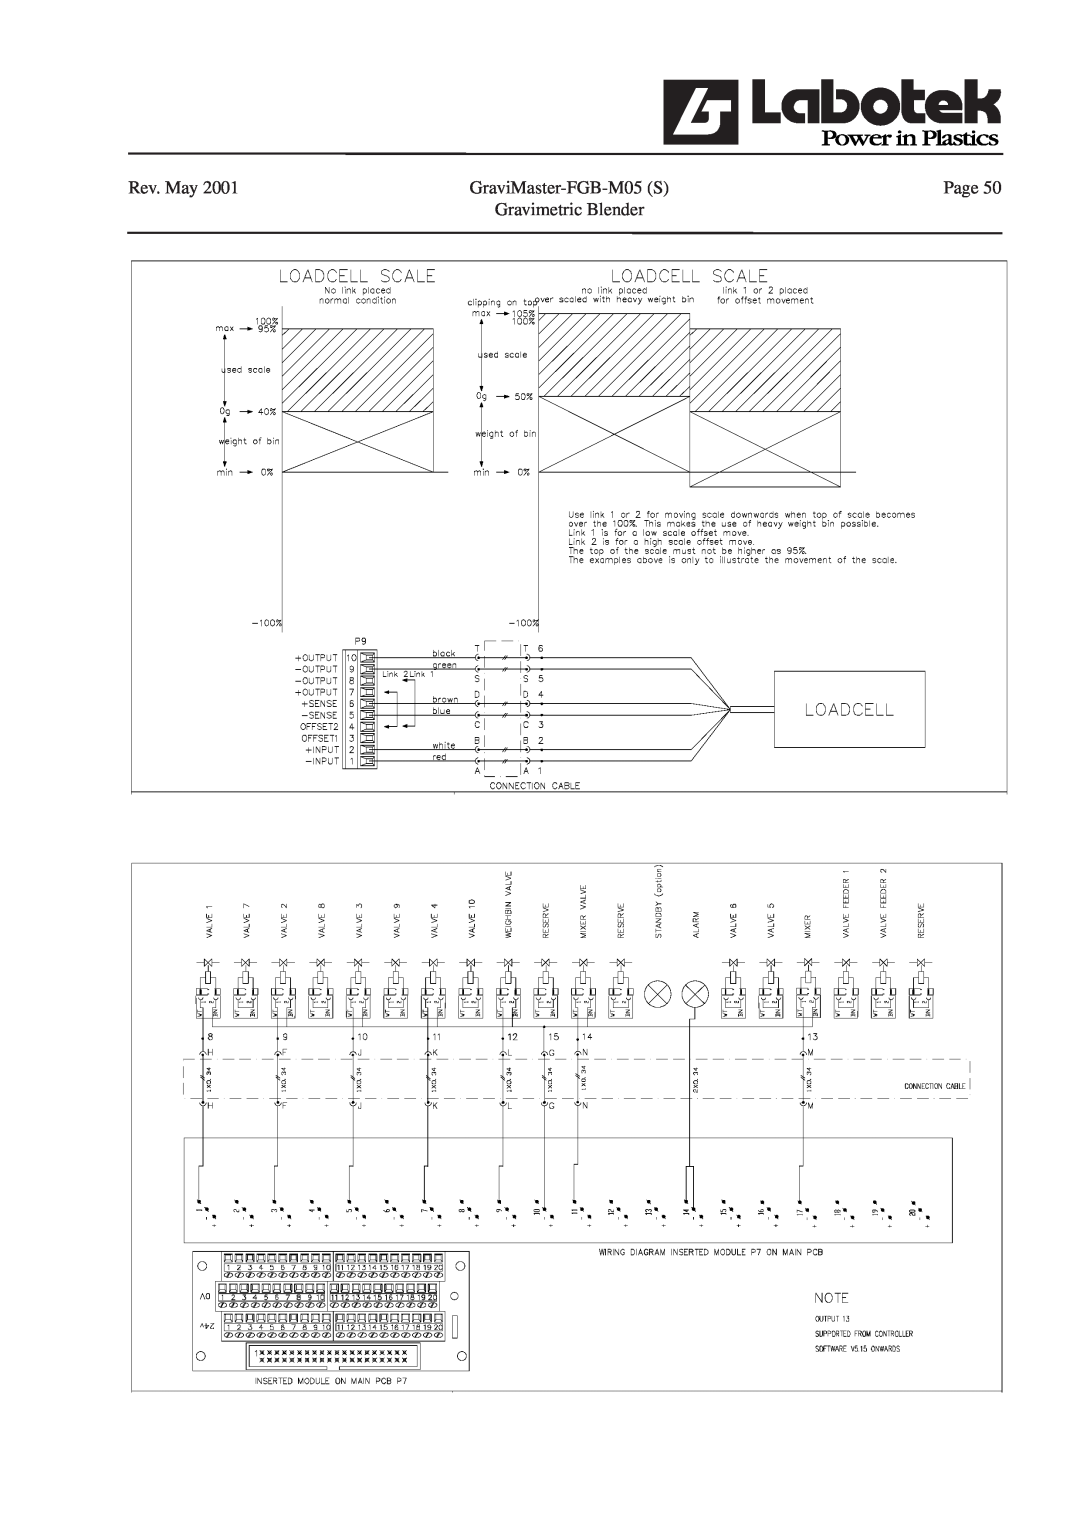 GE manual Rev. May, GraviMaster-FGB-M05S, Page, Gravimetric Blender 